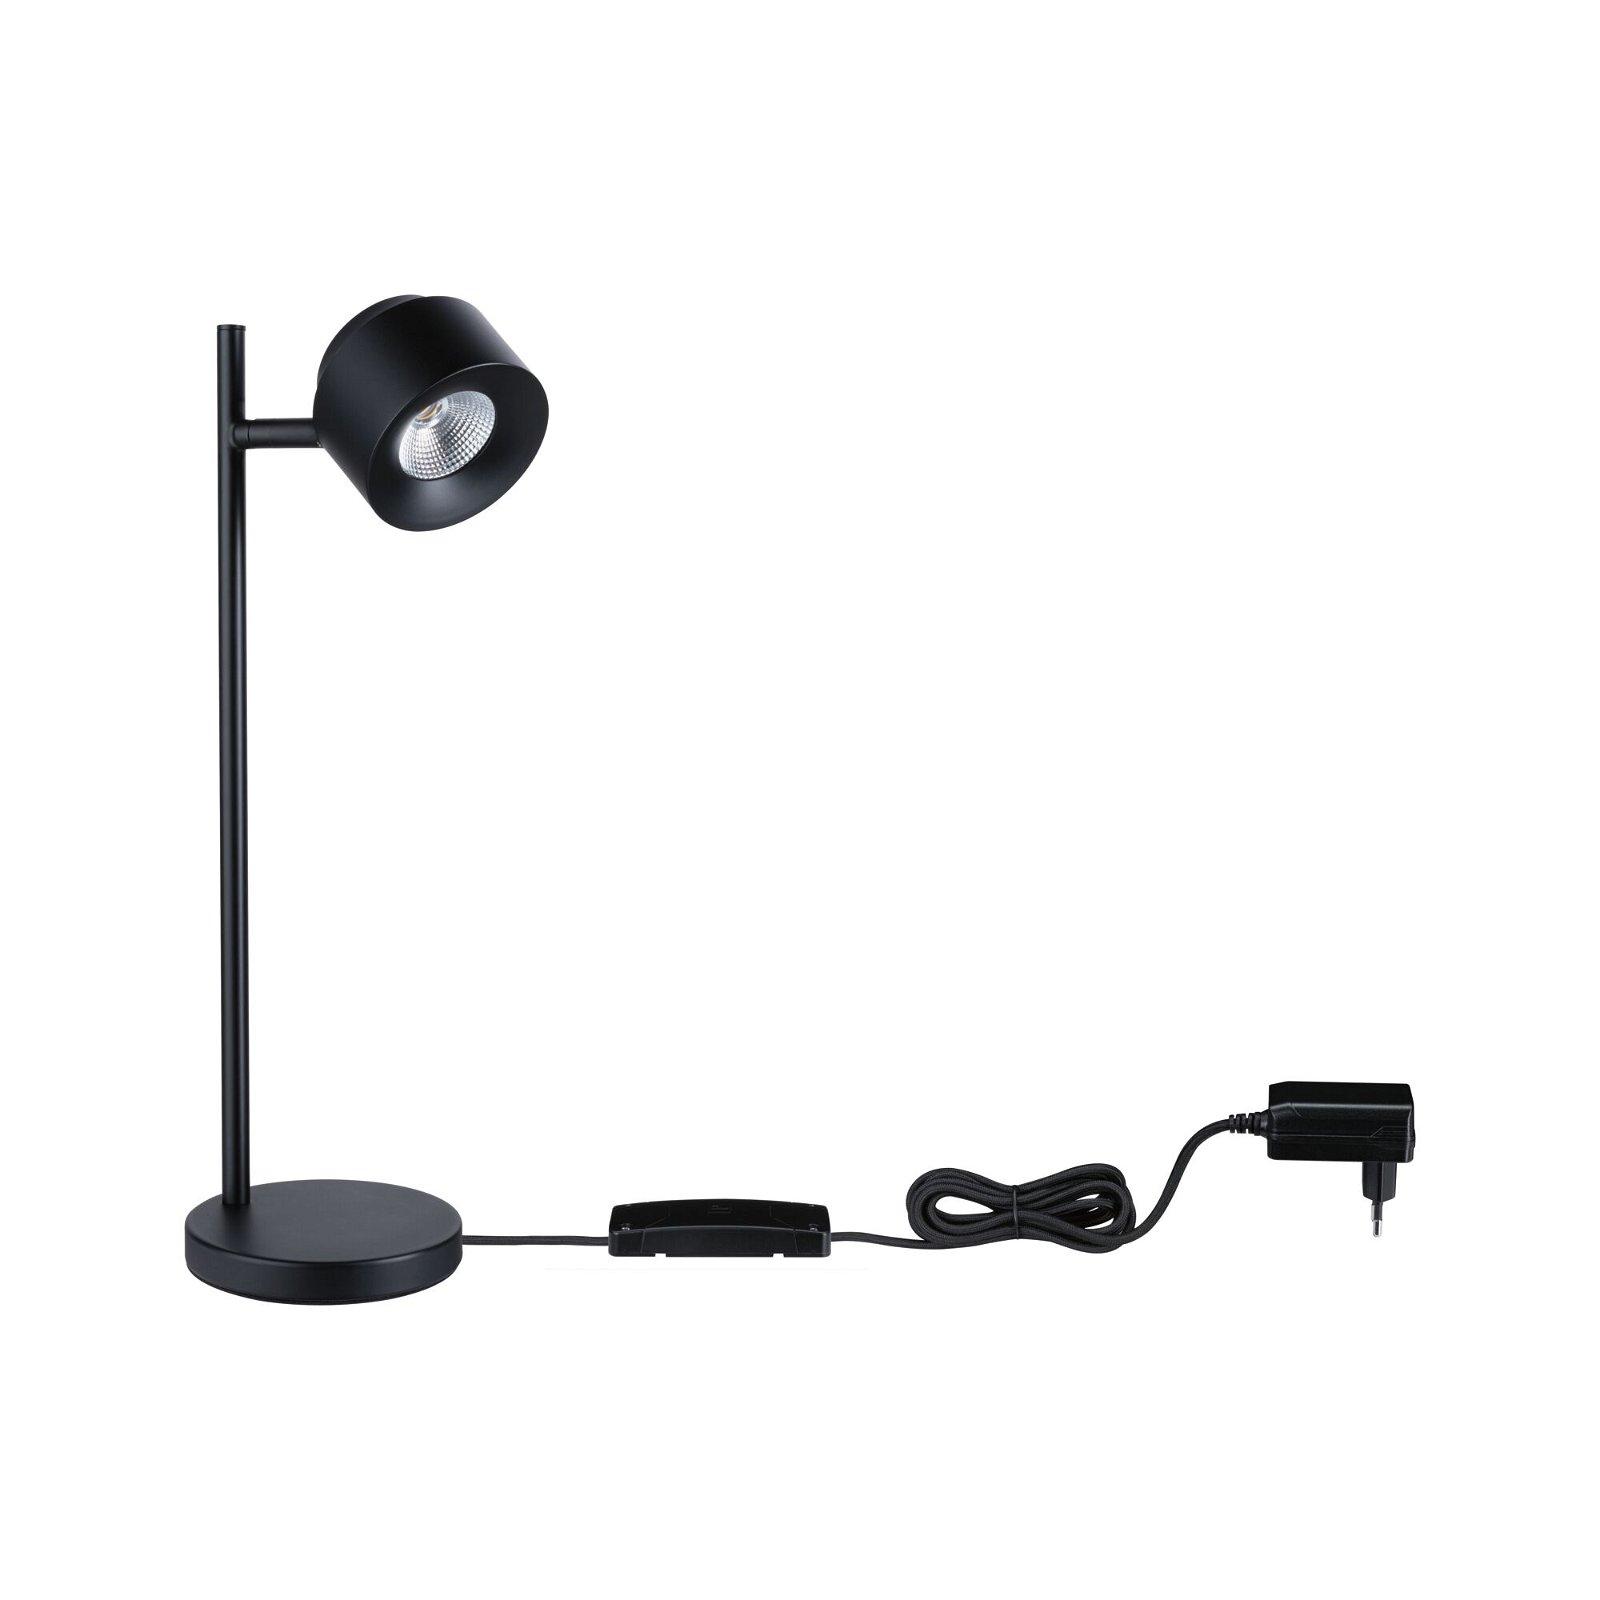 LED stolní lampa Smart Home Zigbee Puric Pane 2700K 4,5W černá - PAULMANN